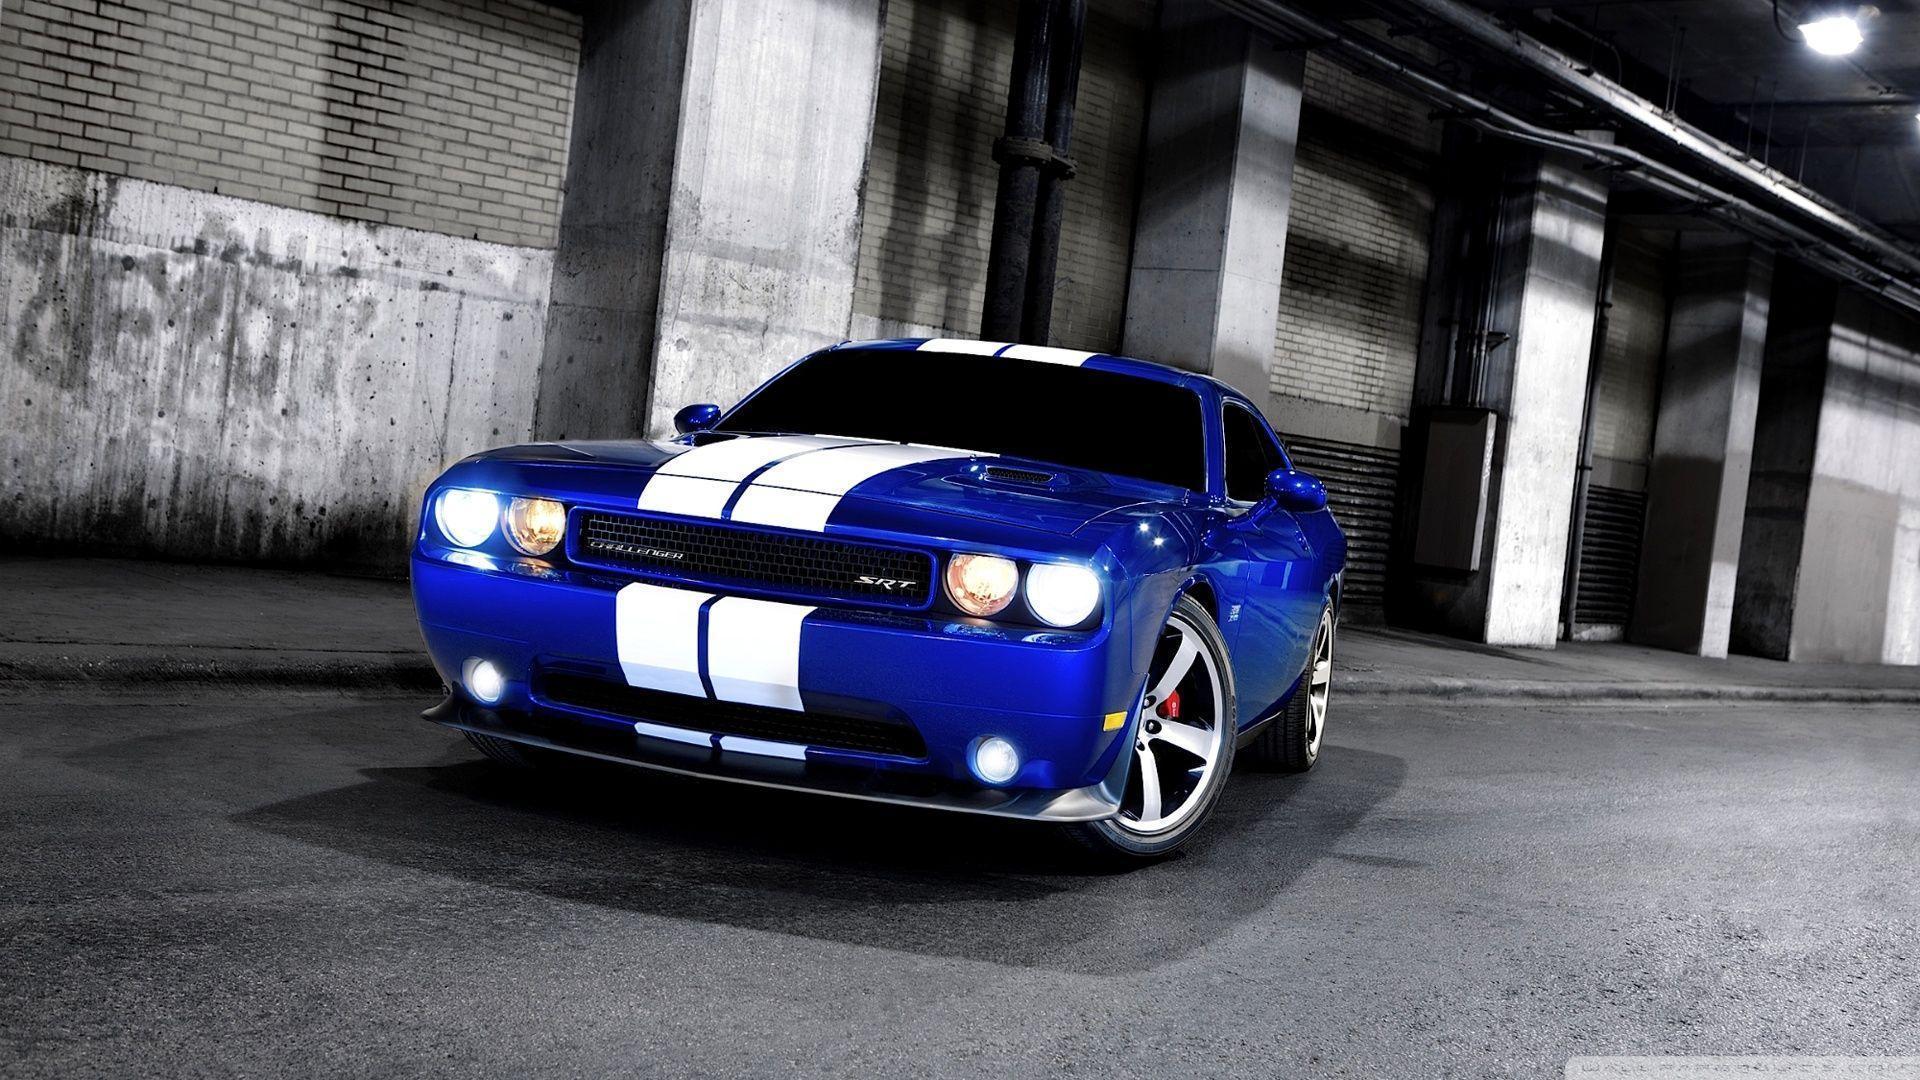 Dodge Challenger SRT8 Blue HD desktop wallpapers : Widescreen